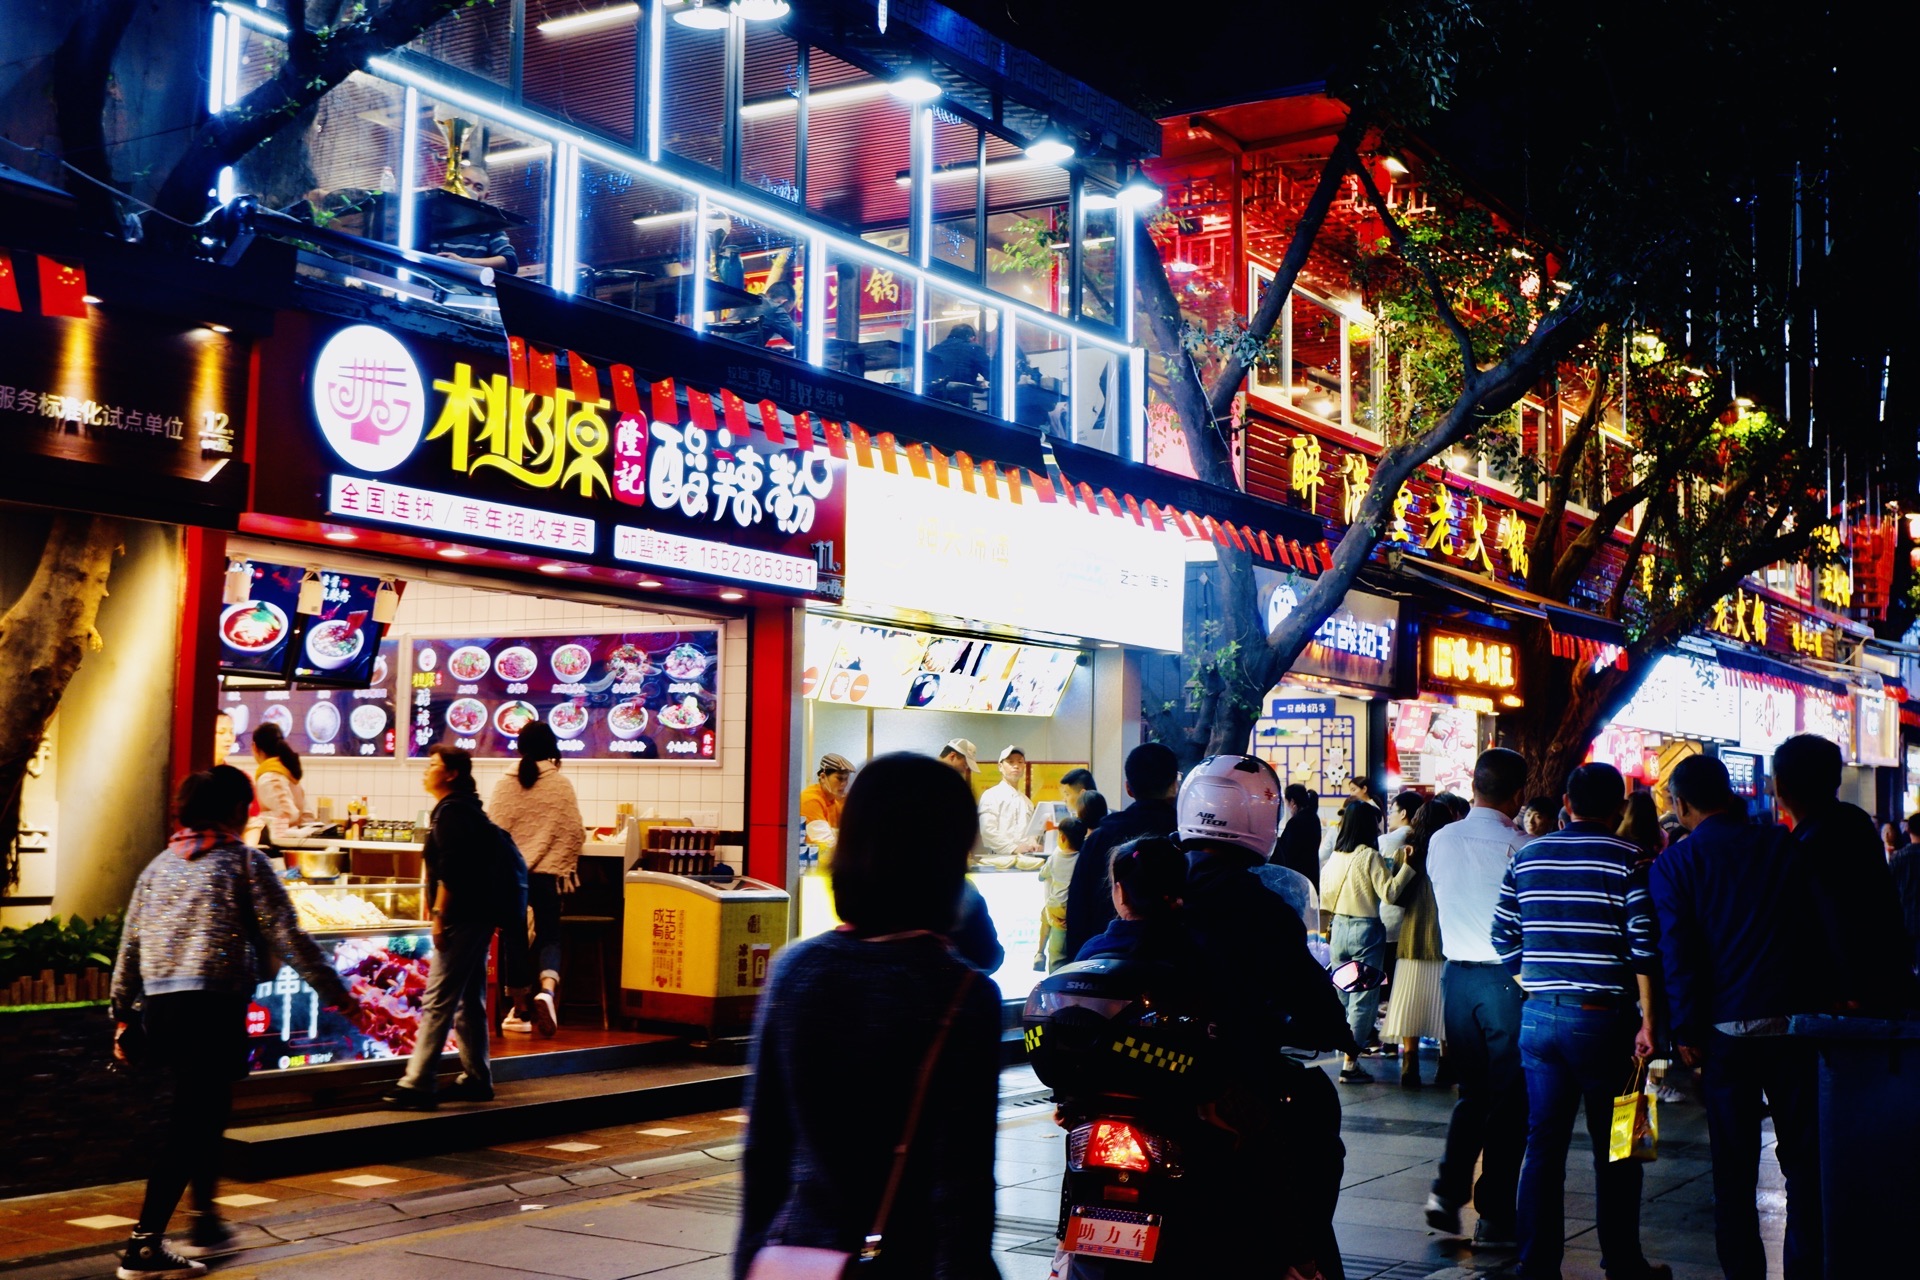 【携程美食林】重庆八一好吃街餐馆,重庆解放碑附近的小吃街61八一